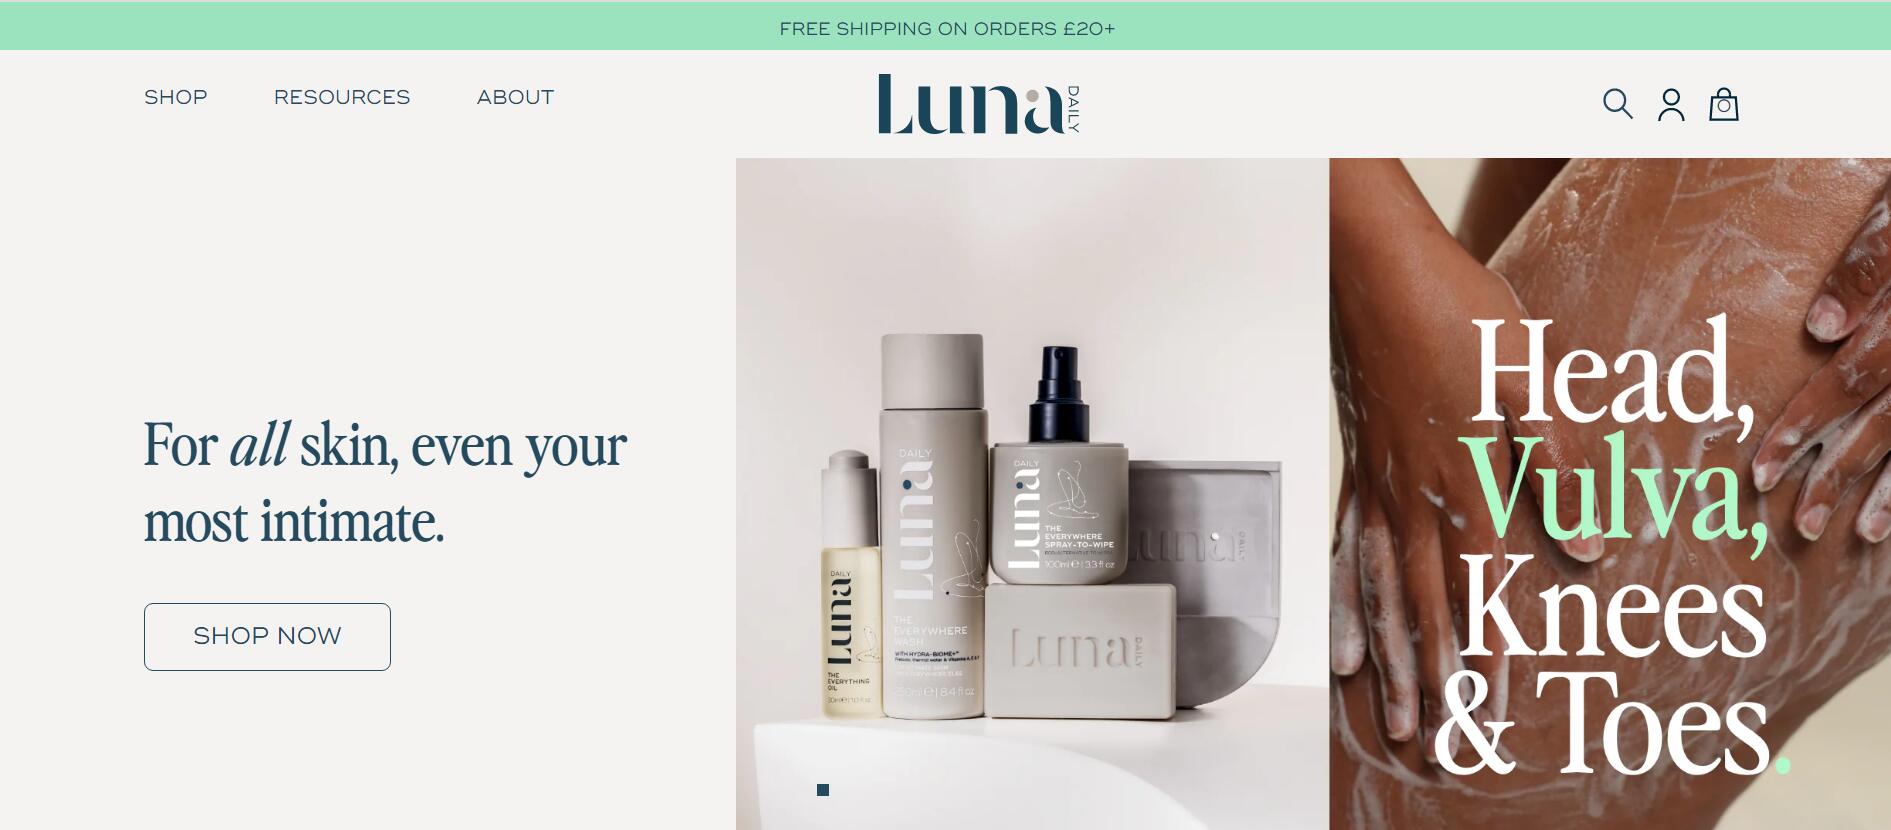 推出仅一年的私密护理品牌 Luna Daily 获370万美元融资，将与丝芙兰合作扩大北美市场